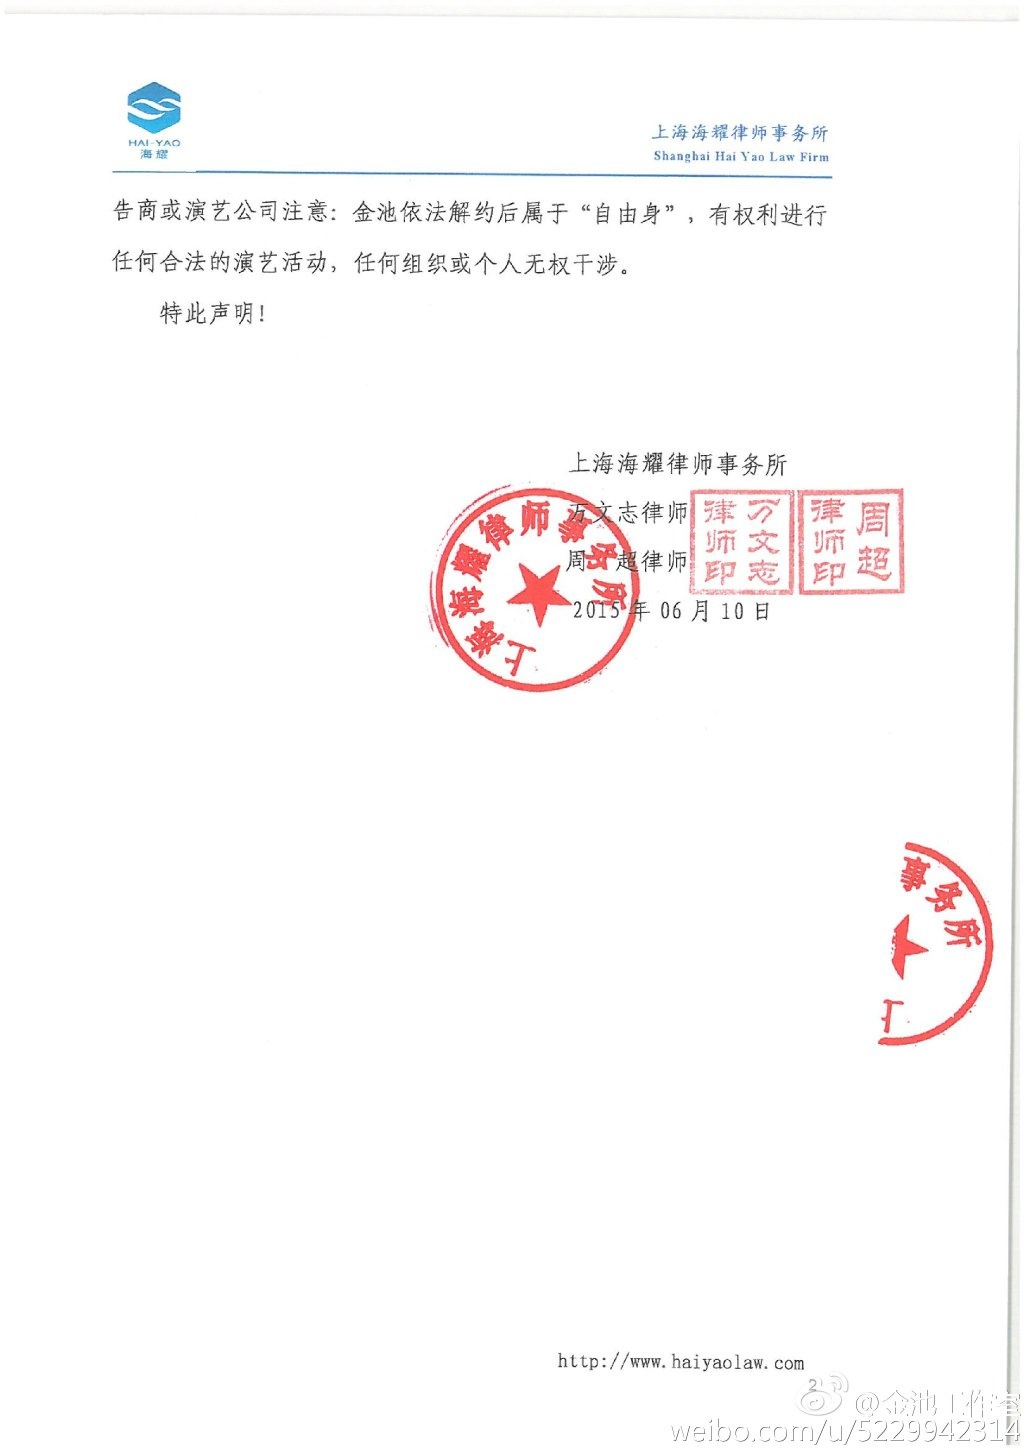 金池发律师函声明:灿星违约在先 去年已提解约_华语_电影网_1905.com